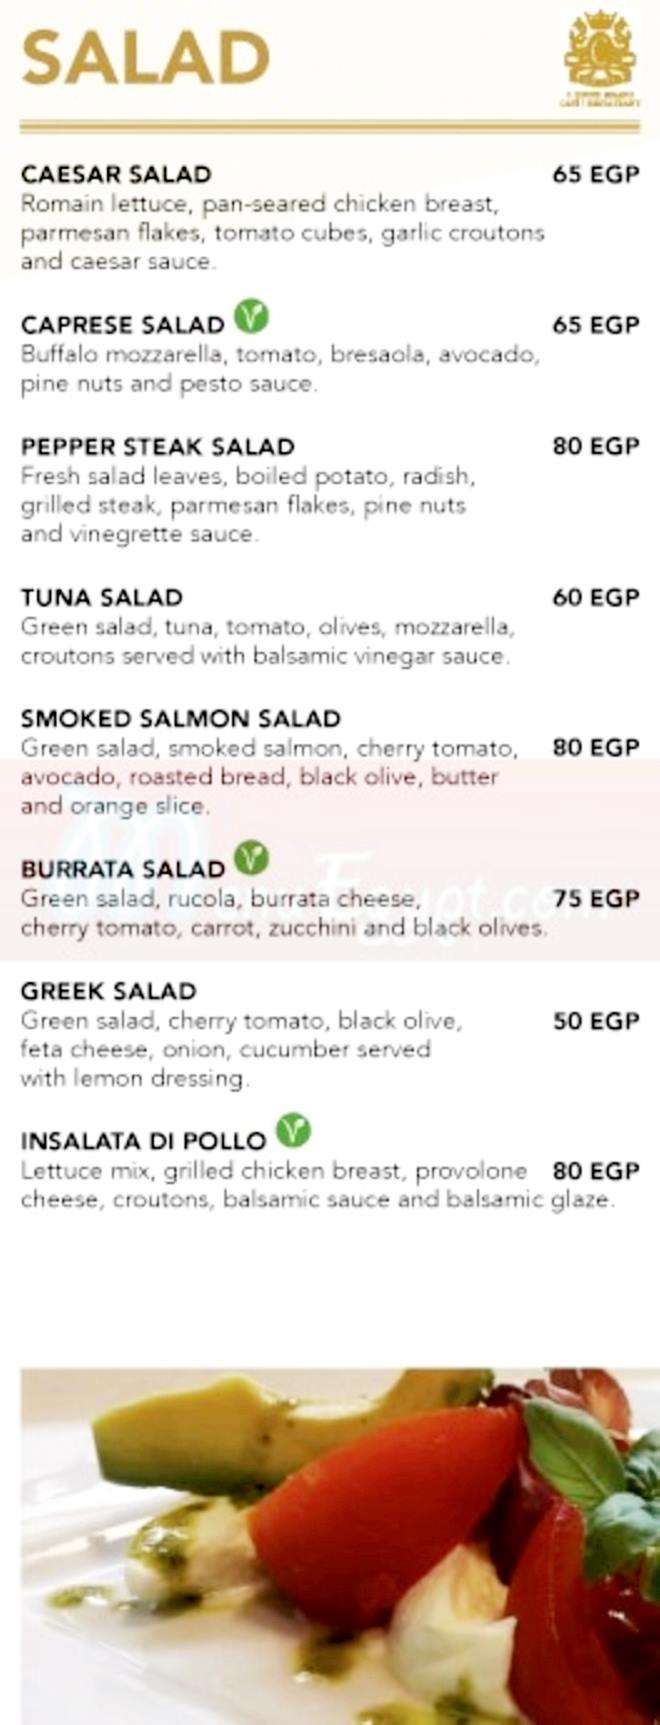 C House Milano menu prices